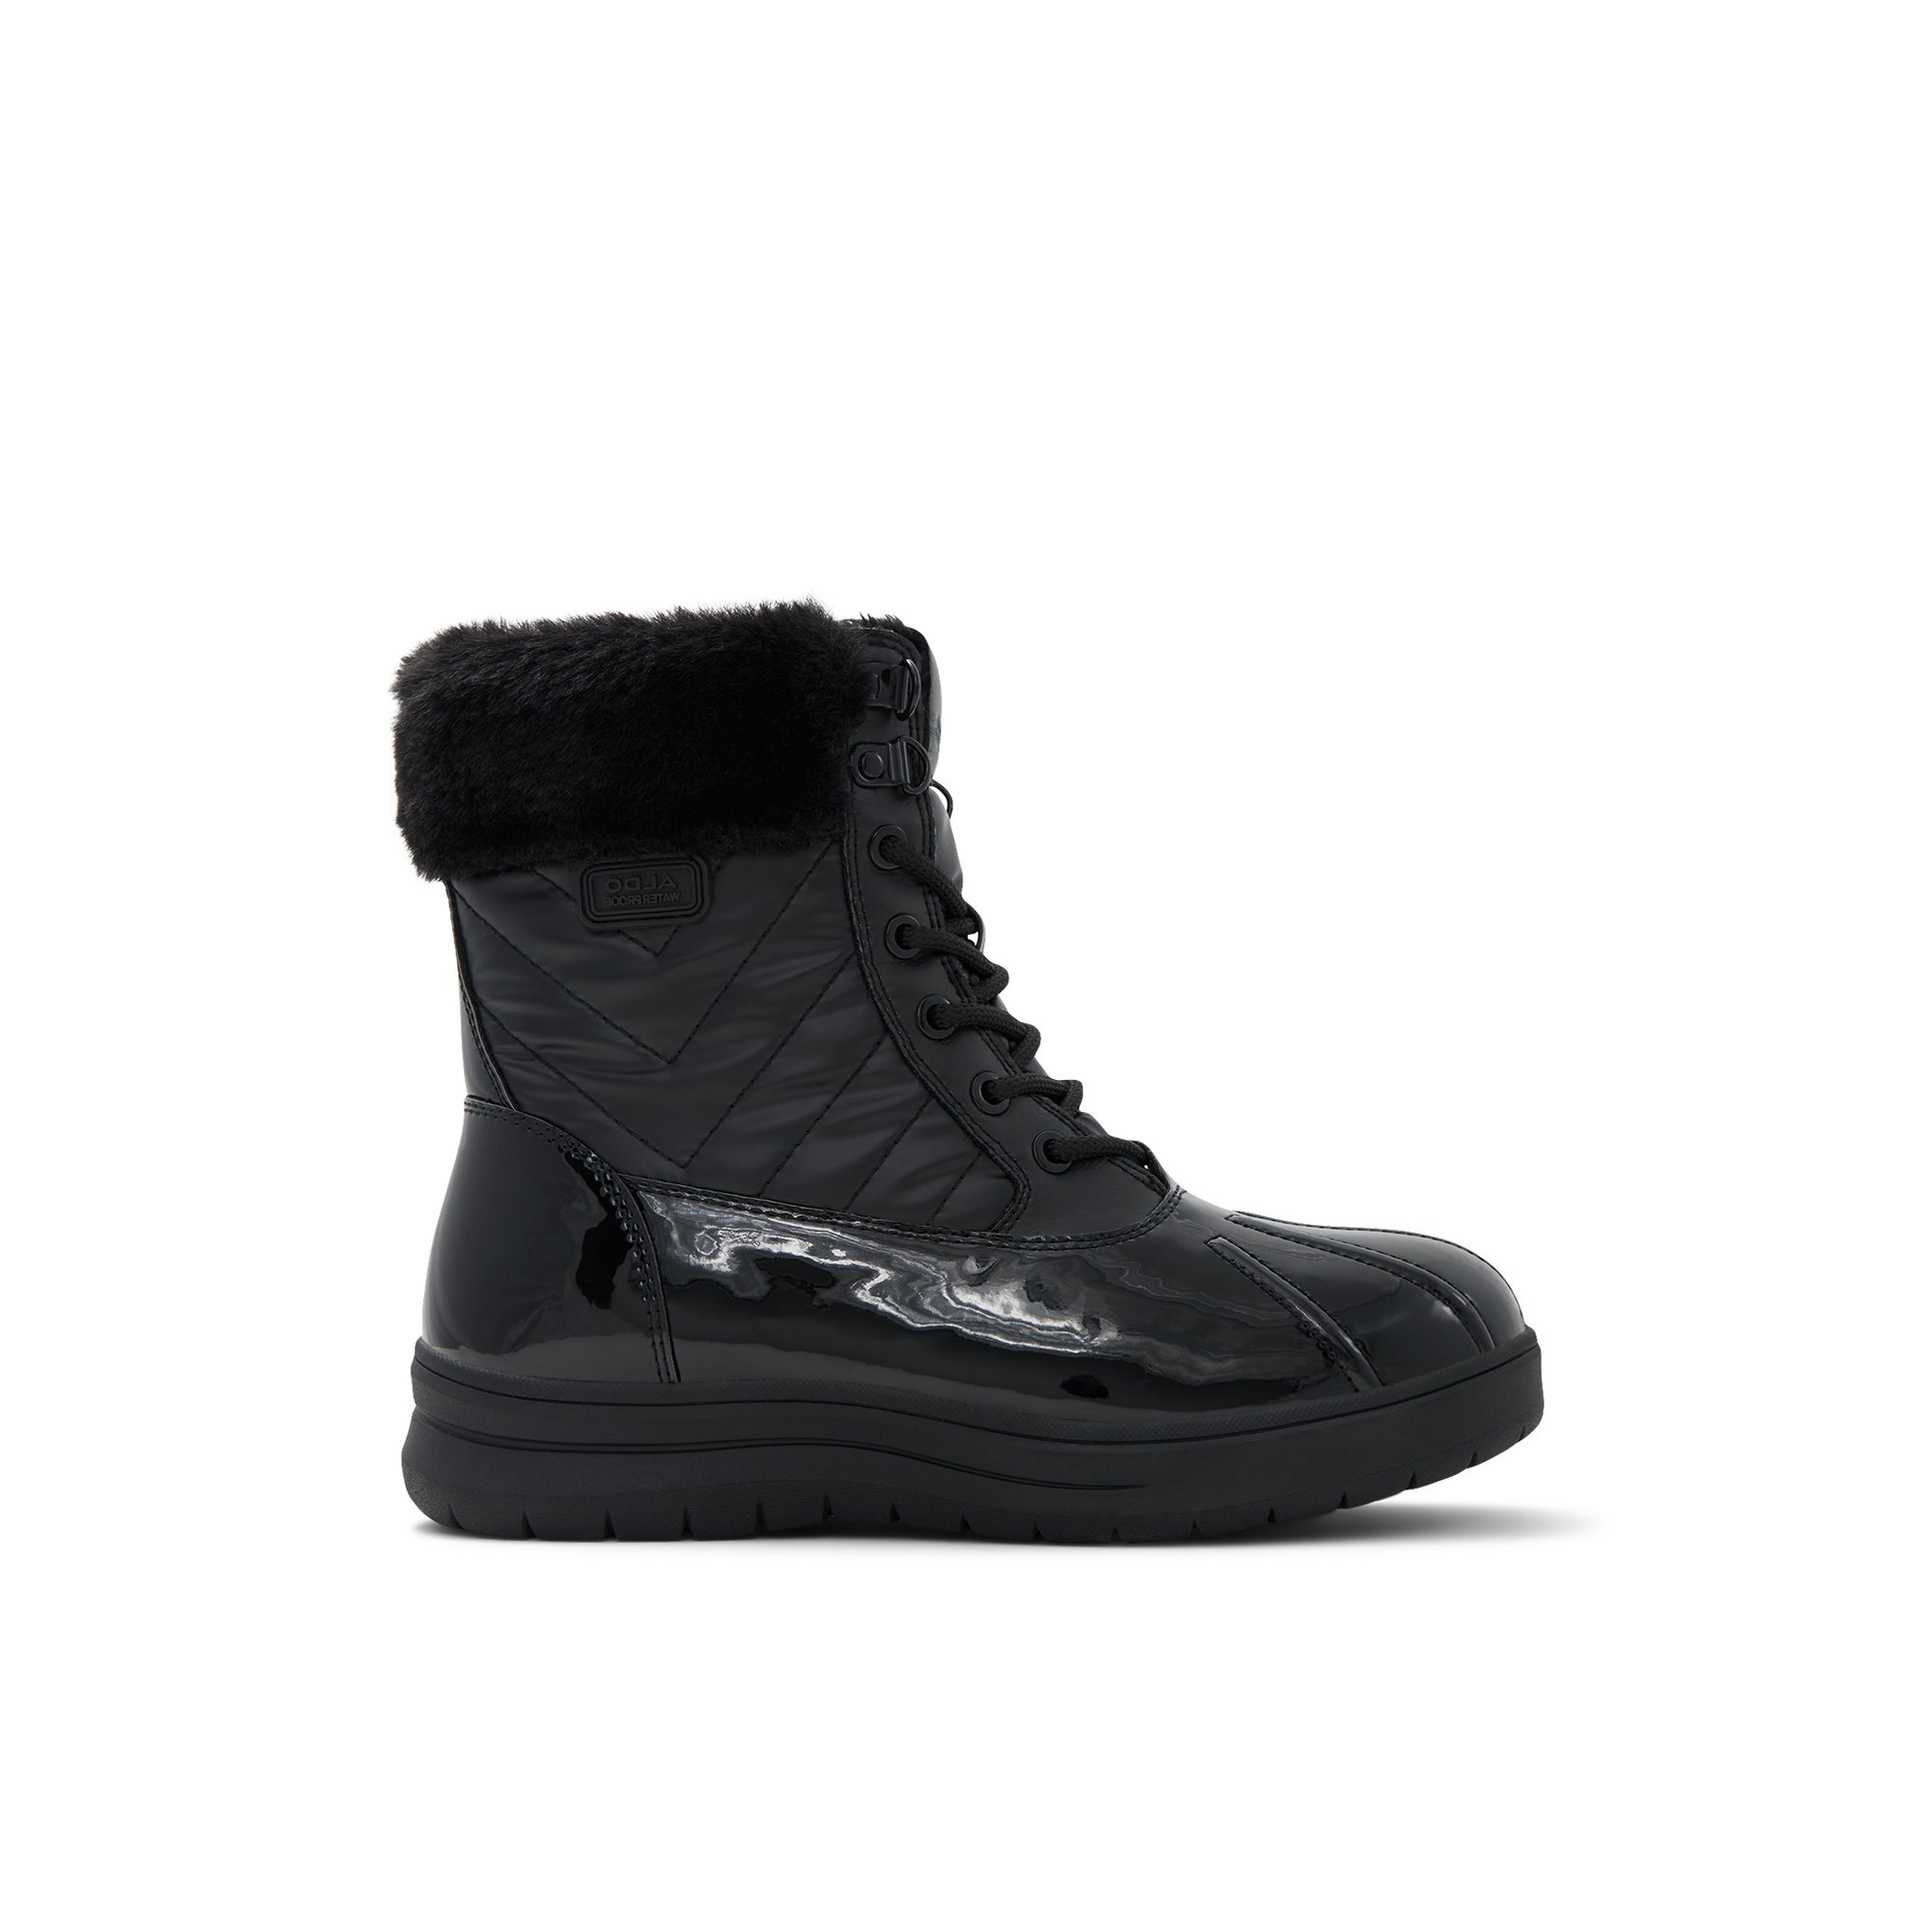 ALDO Flurrys - Women's Winter Boot - Black